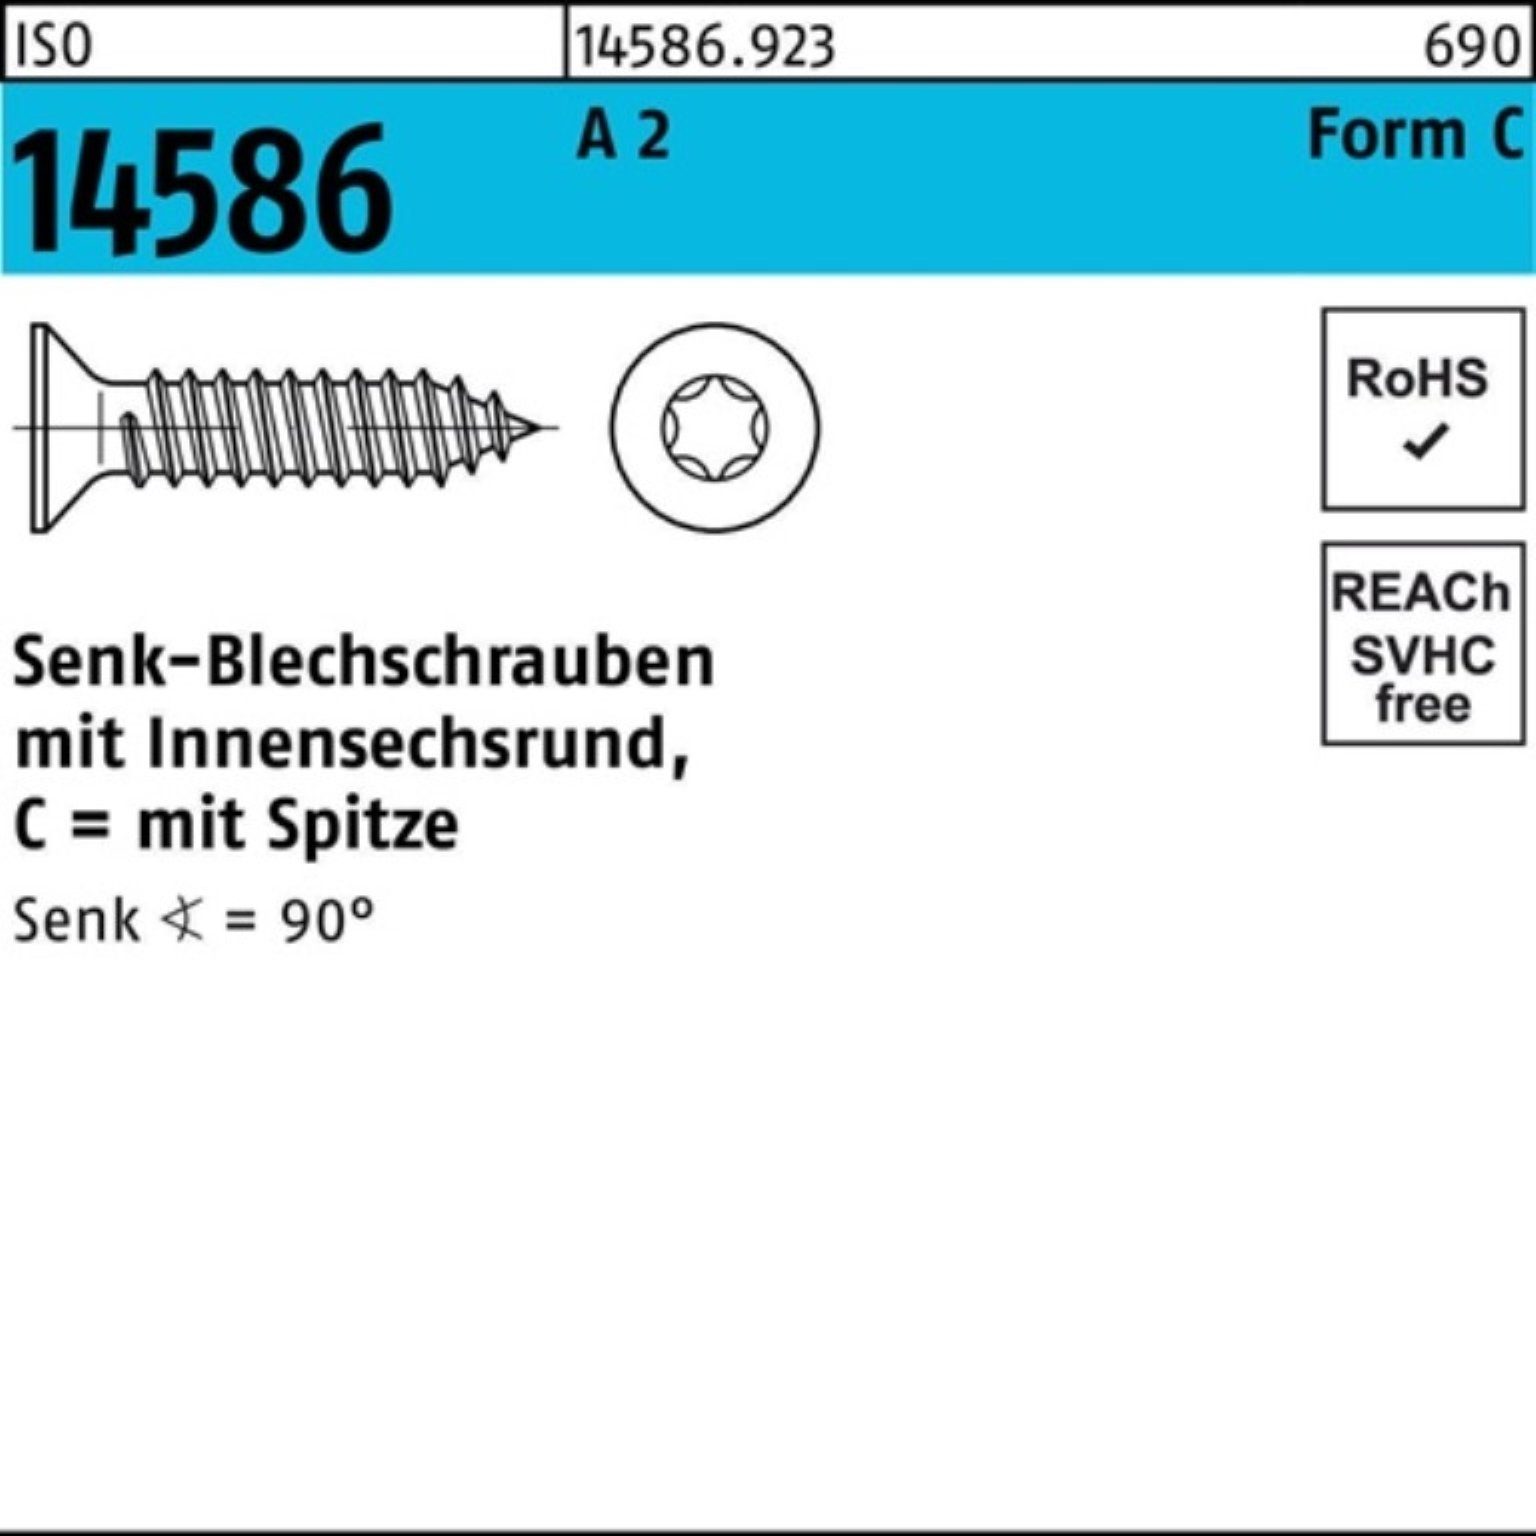 Reyher Schraube 500er Pack Senkblechschraube ISO 14586 ISR/Spitze 4,8x 9,5 -C T25 A 2